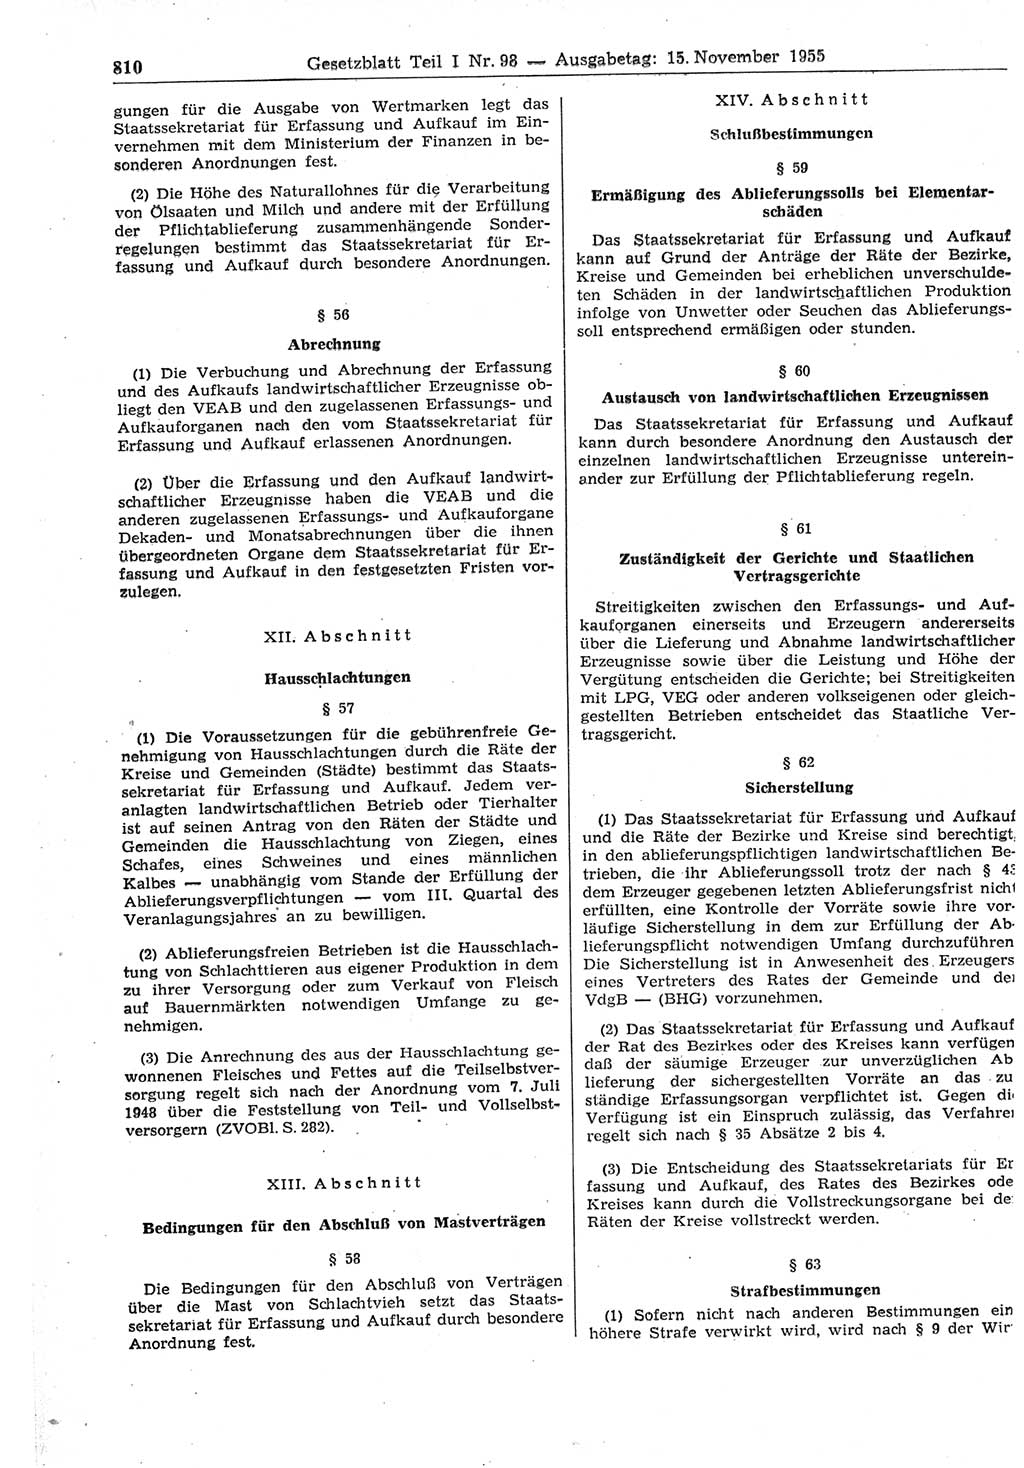 Gesetzblatt (GBl.) der Deutschen Demokratischen Republik (DDR) Teil Ⅰ 1955, Seite 810 (GBl. DDR Ⅰ 1955, S. 810)